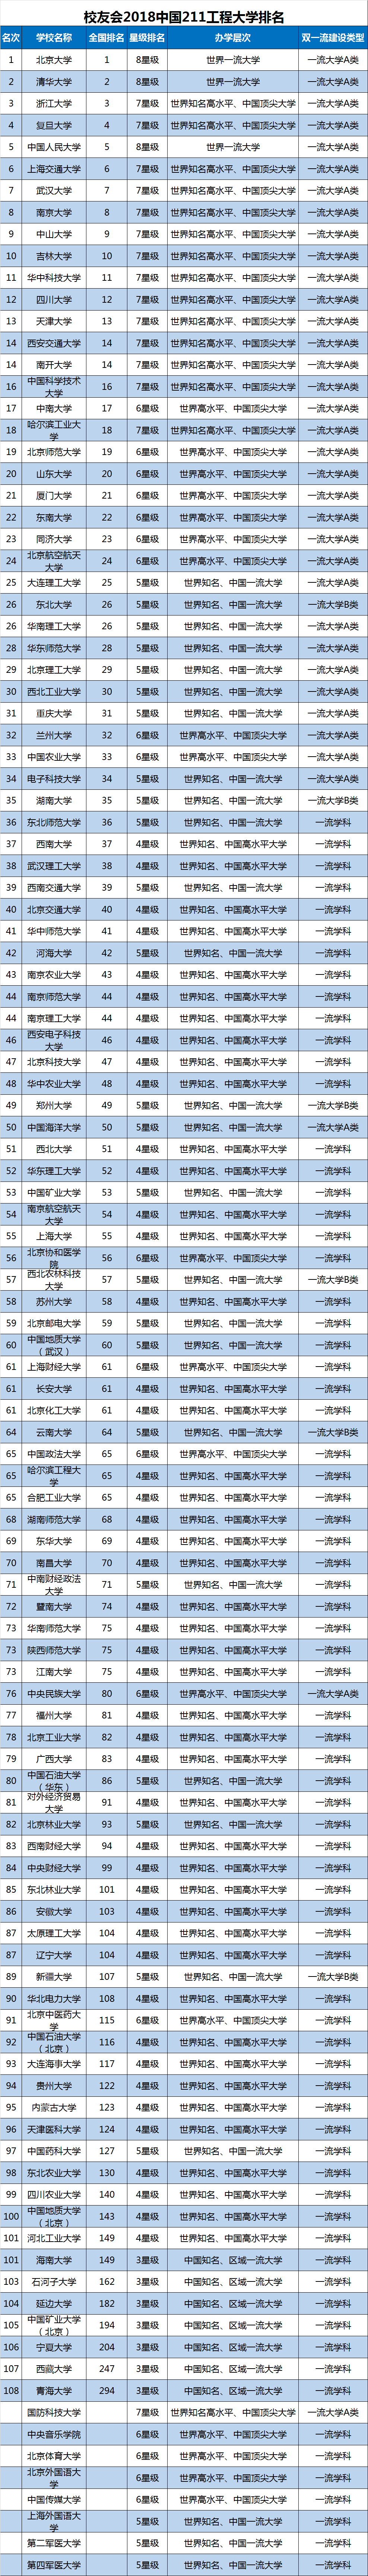 校友会2018中国211工程大学排名出炉,84所大学跻身百强